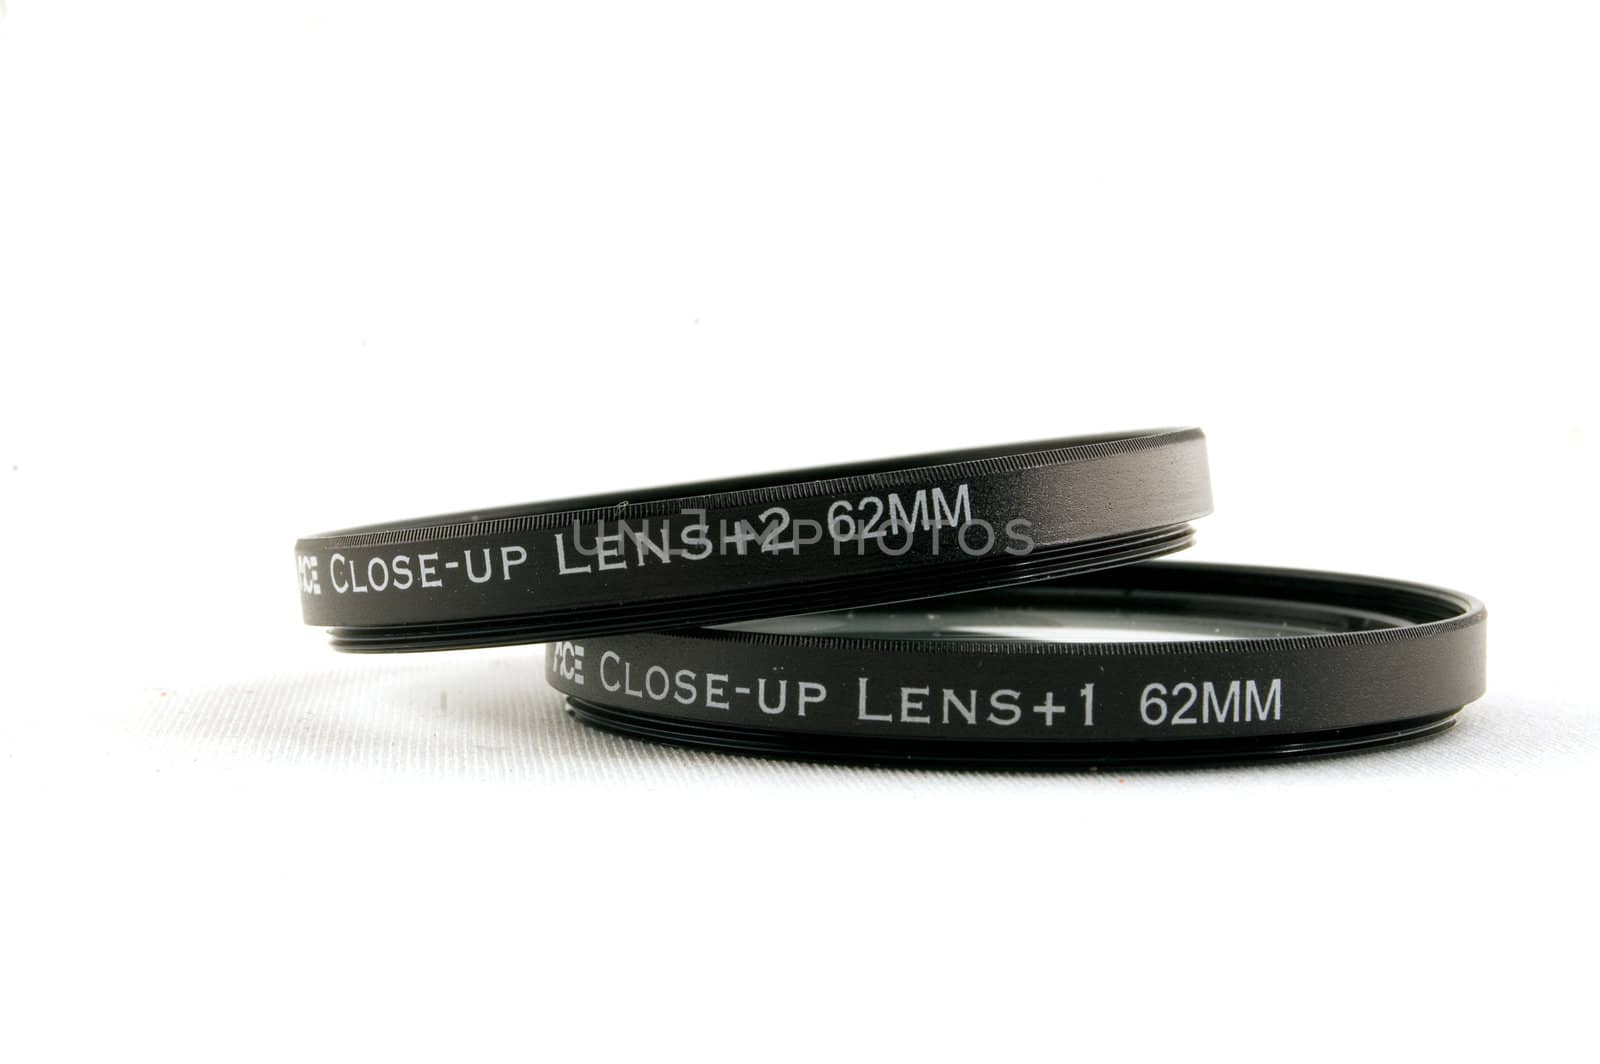 close up lens

